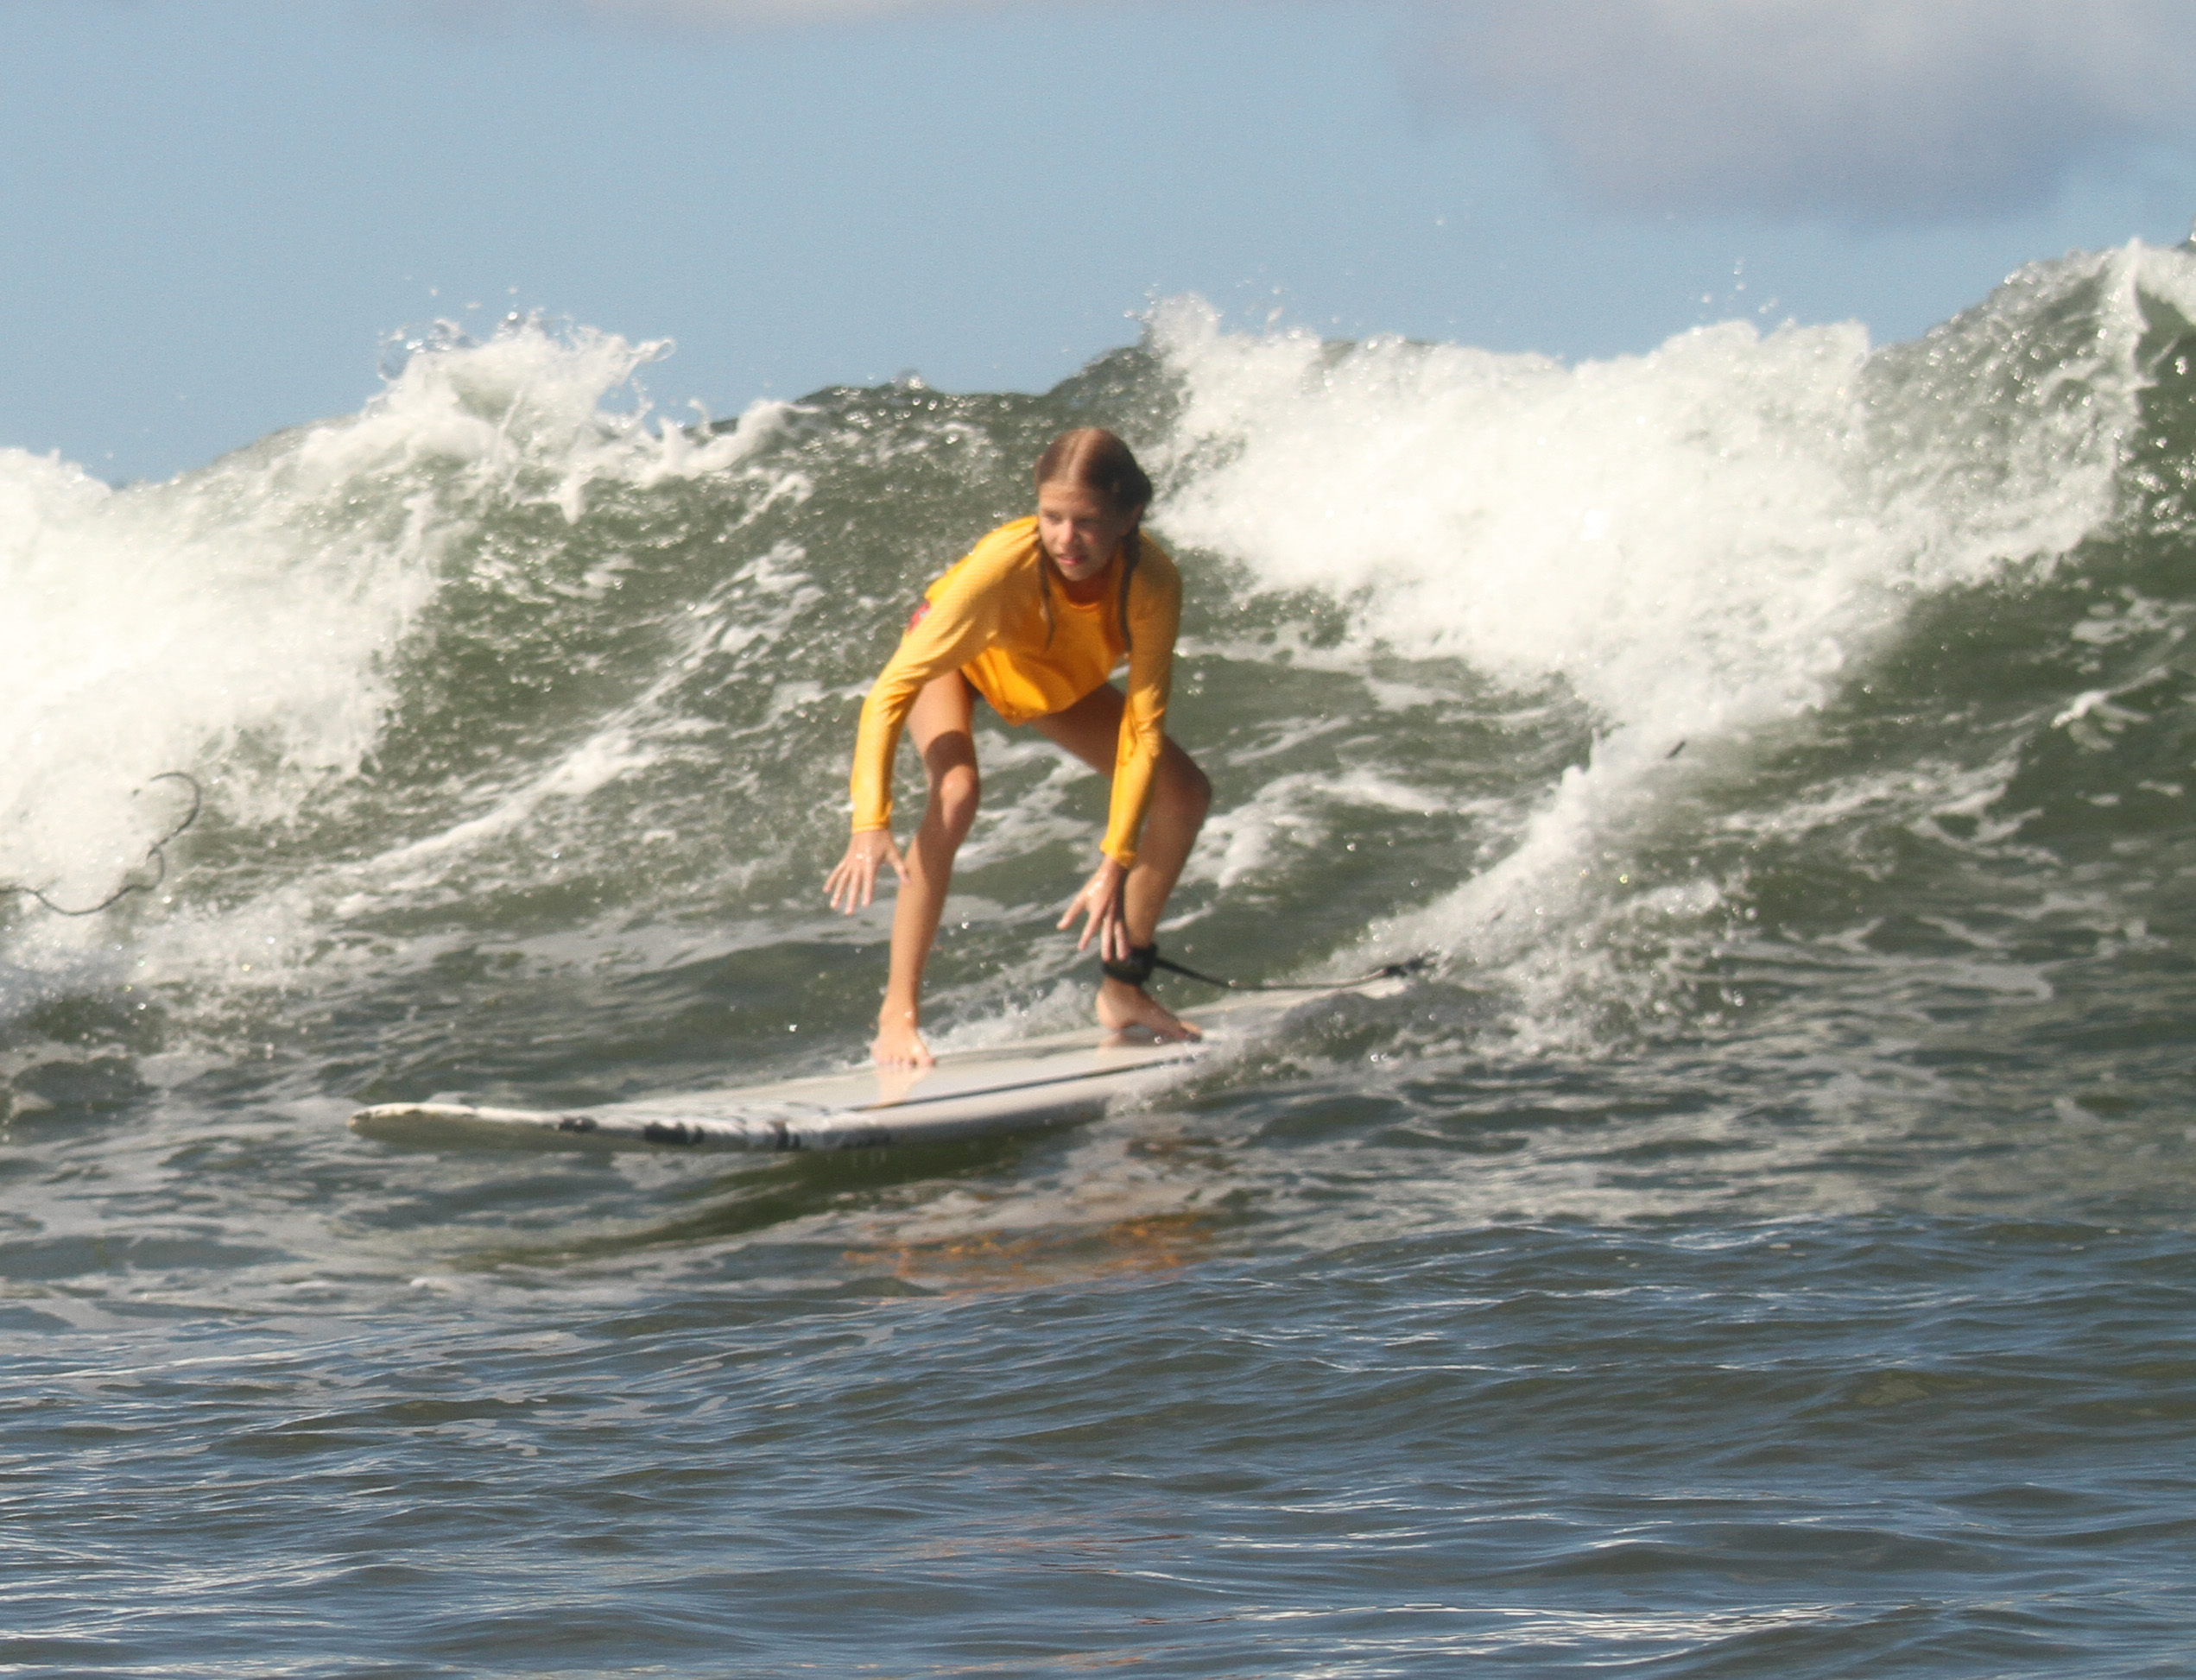 Evelyn surfing, Haleiwa, HI 2014